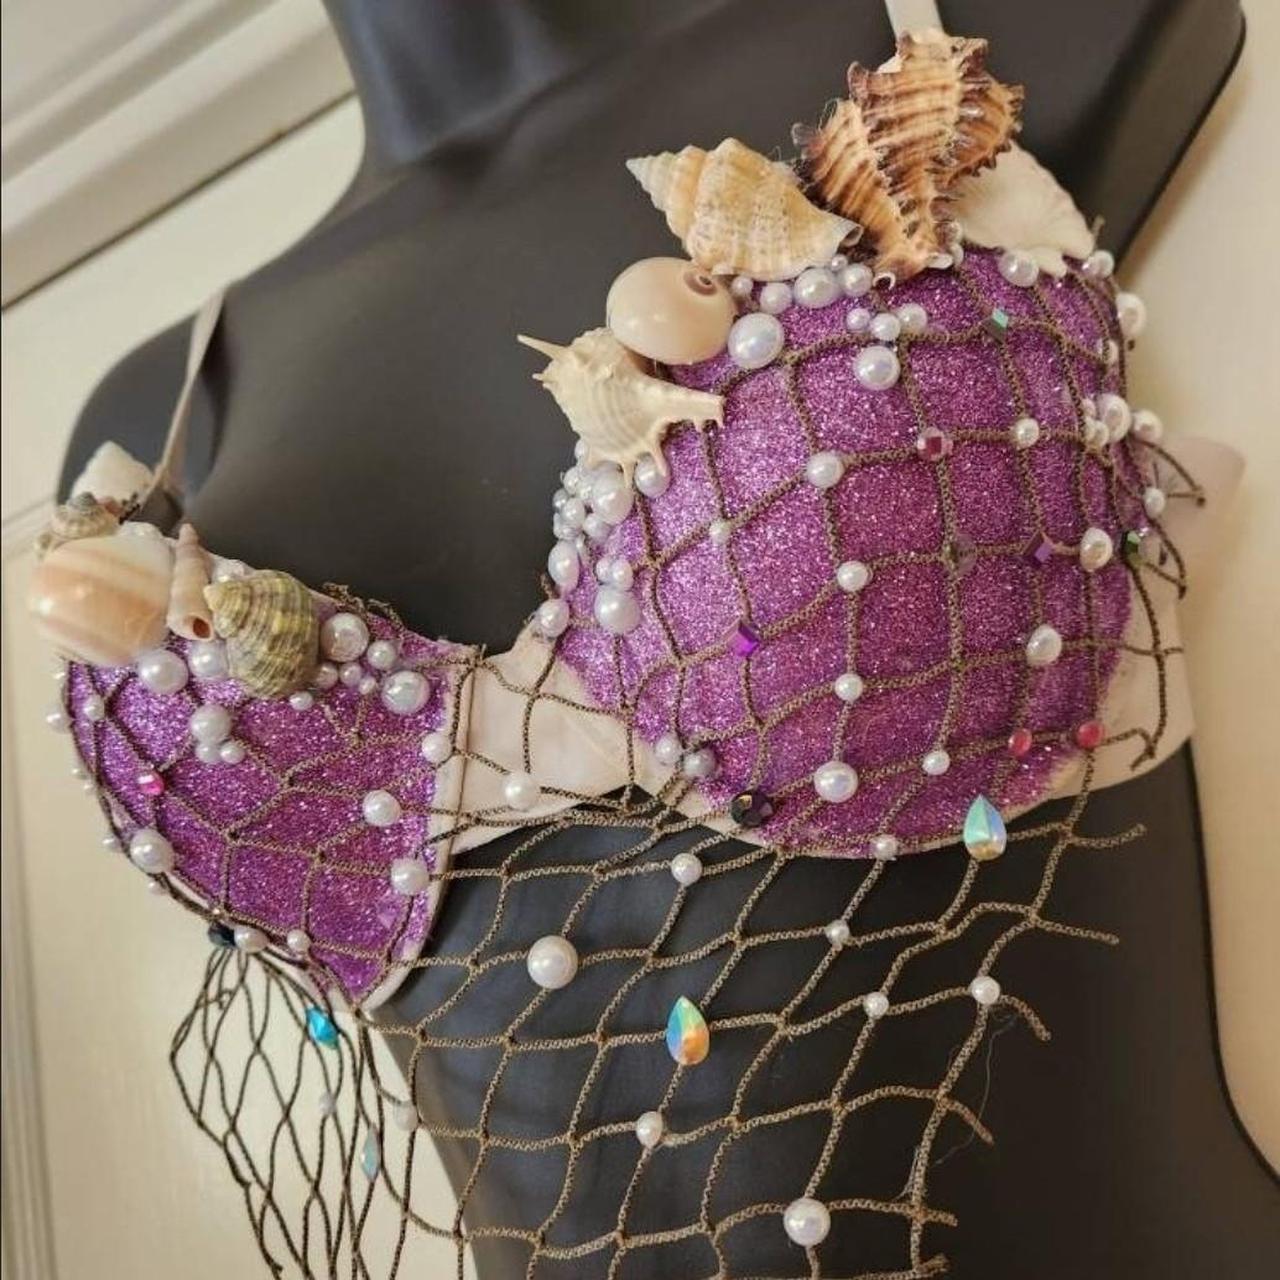 Purple Mermaid Seashell Bra  Purple mermaid, Seashell bra, Mermaid bra